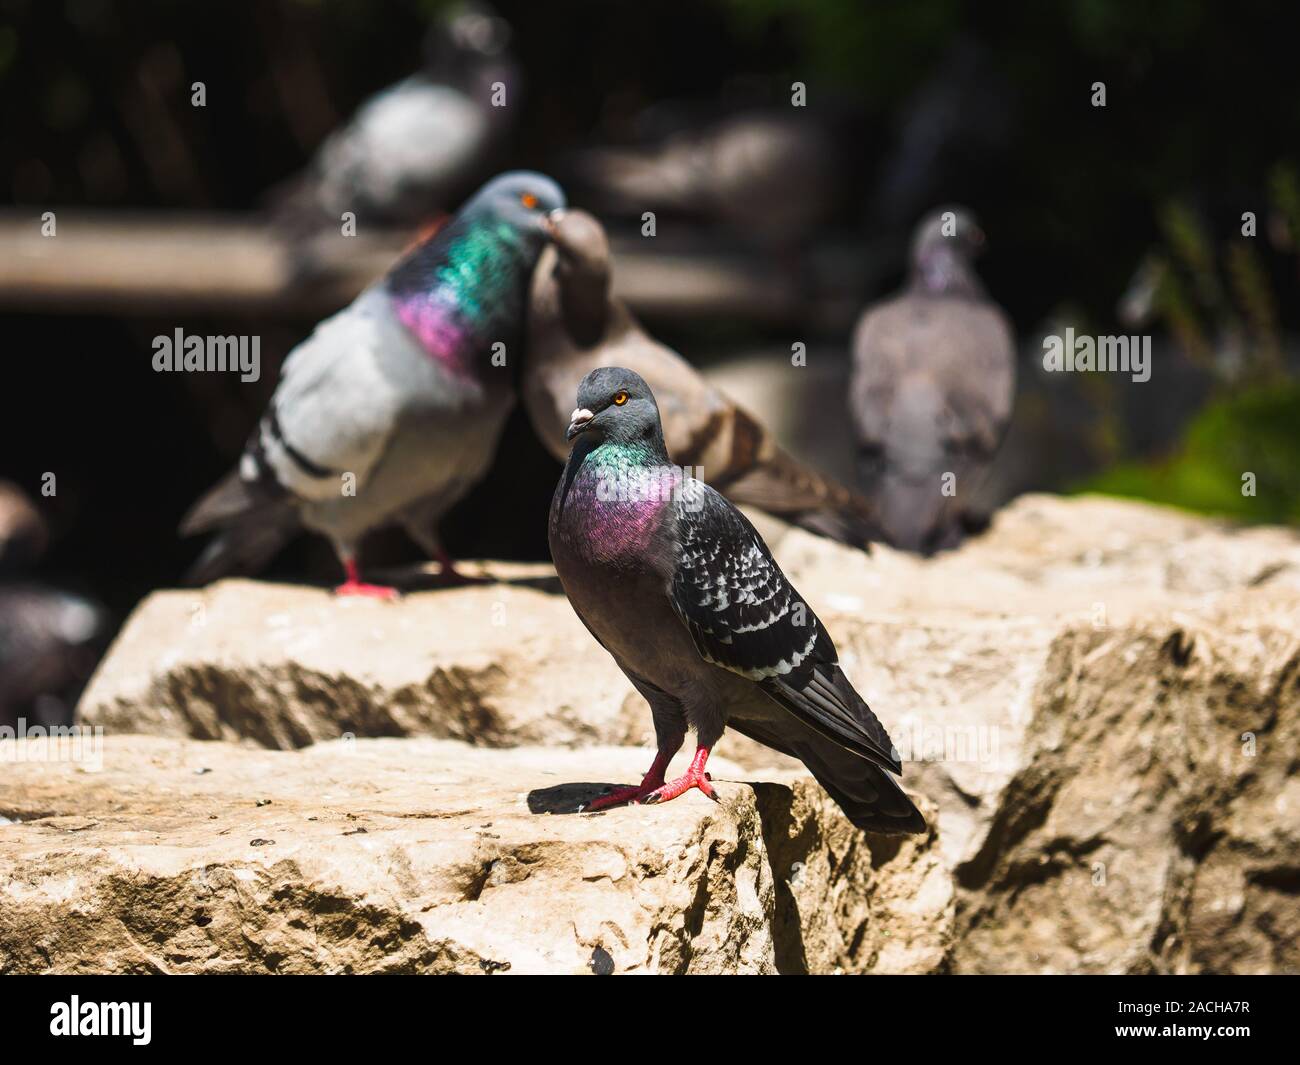 Taube auf den Felsen sitzend, während zwei Tauben im Hintergrund küssen. Stockfoto